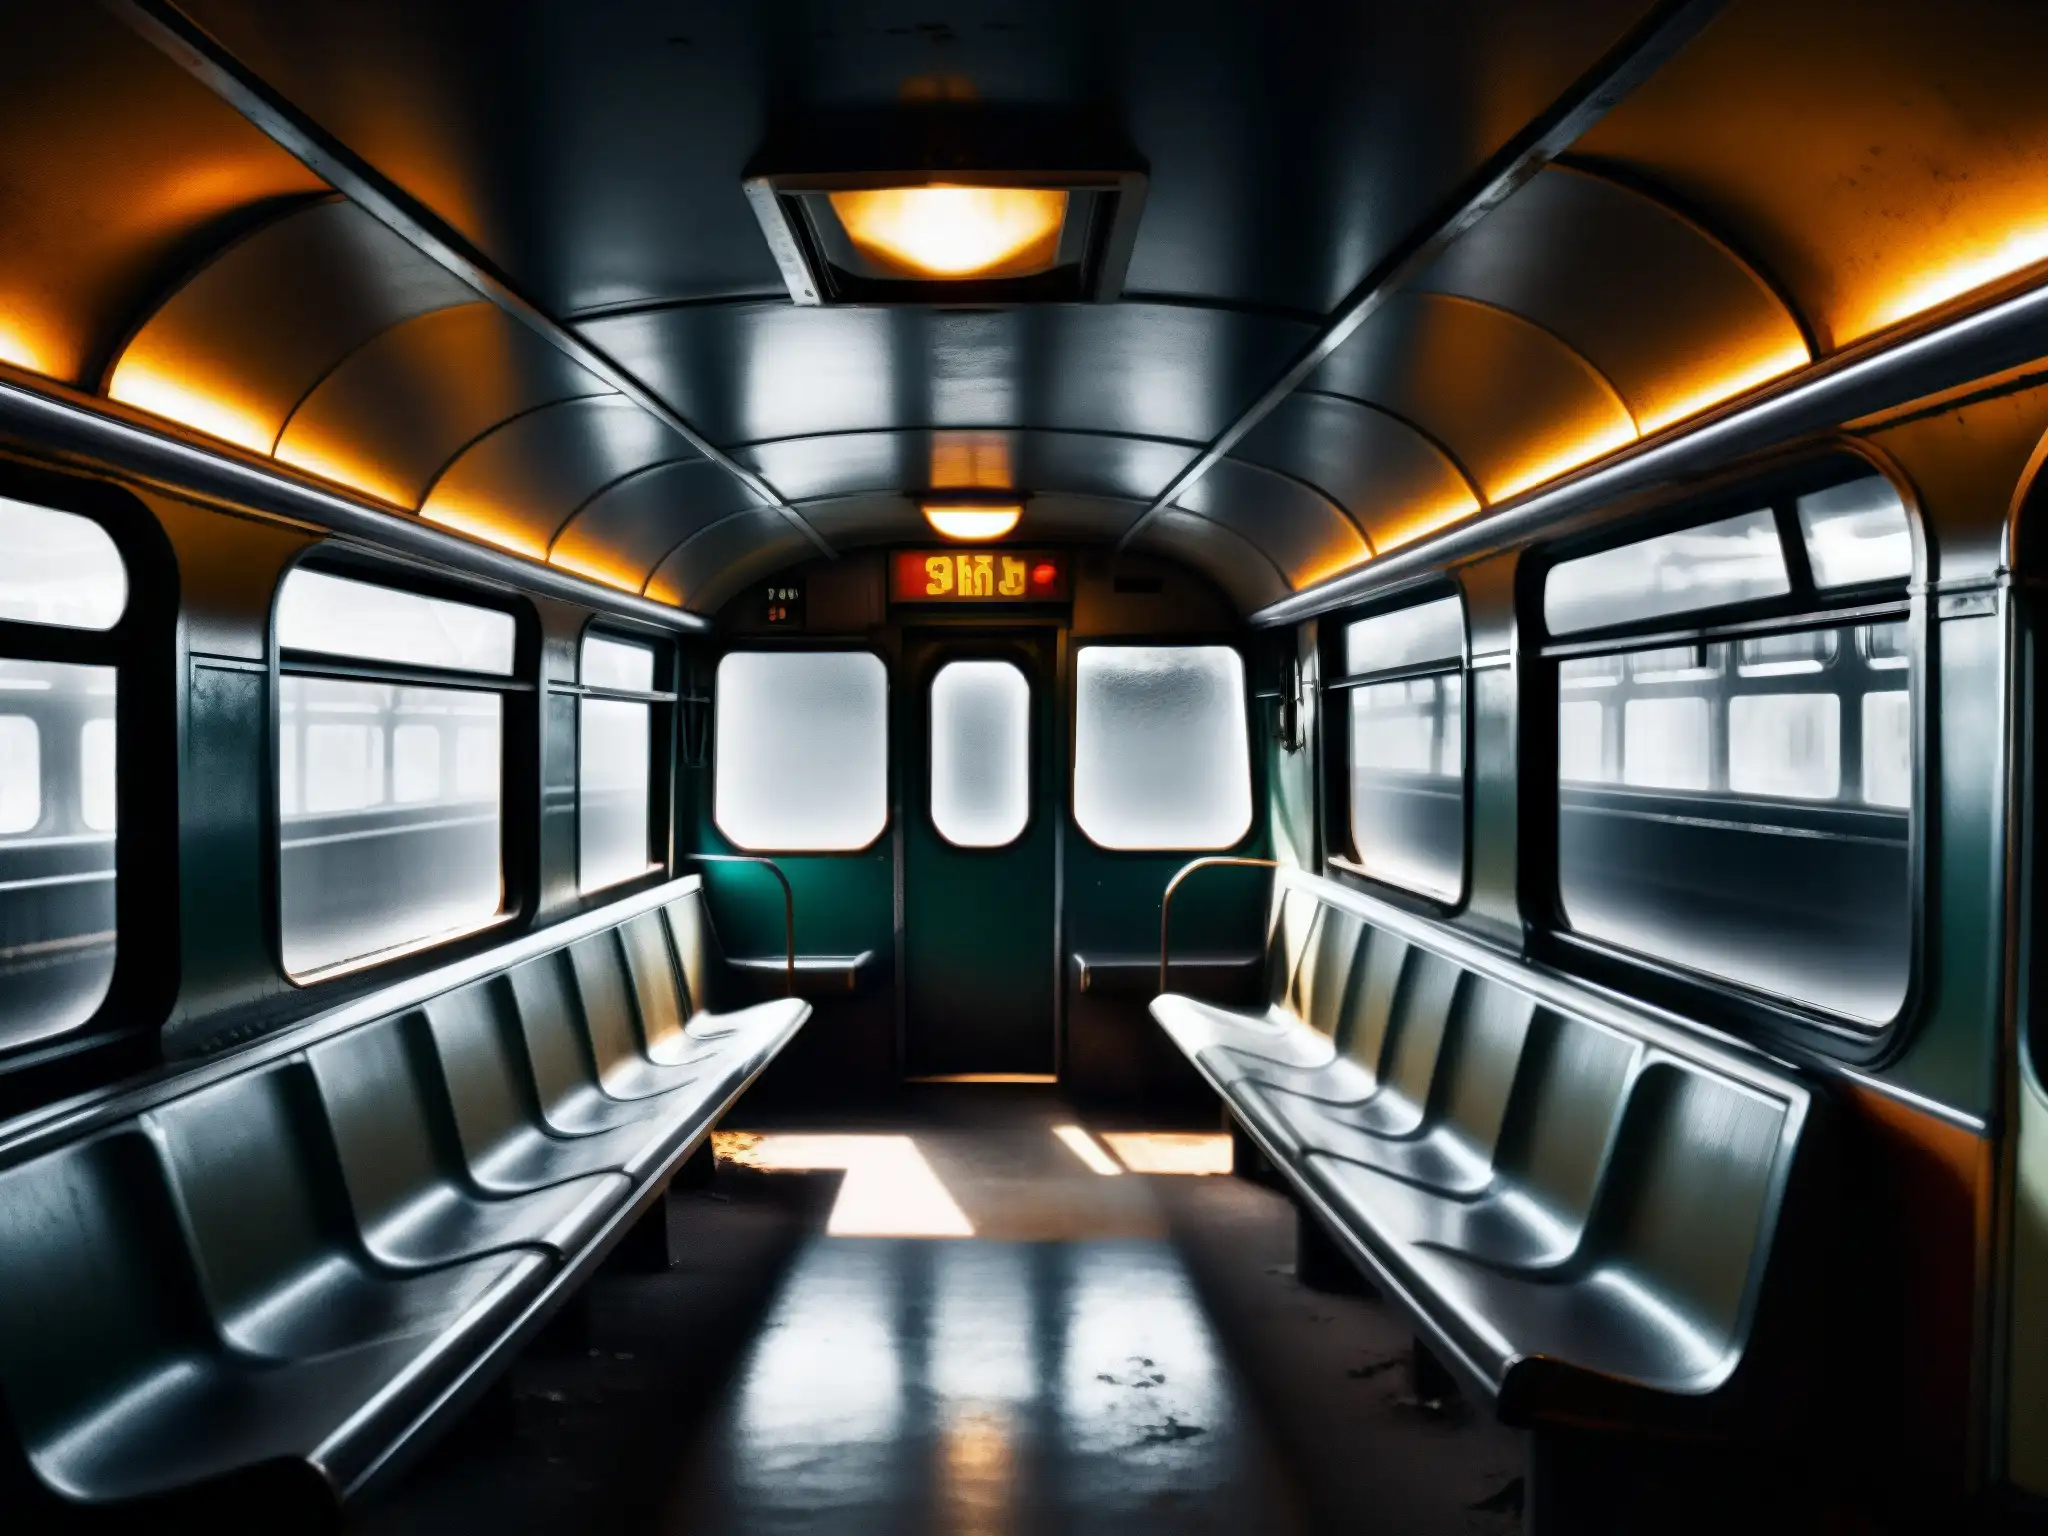 Foto en blanco y negro de un vagón de metro abandonado, con una atmósfera fantasmagórica de desolación y misterio